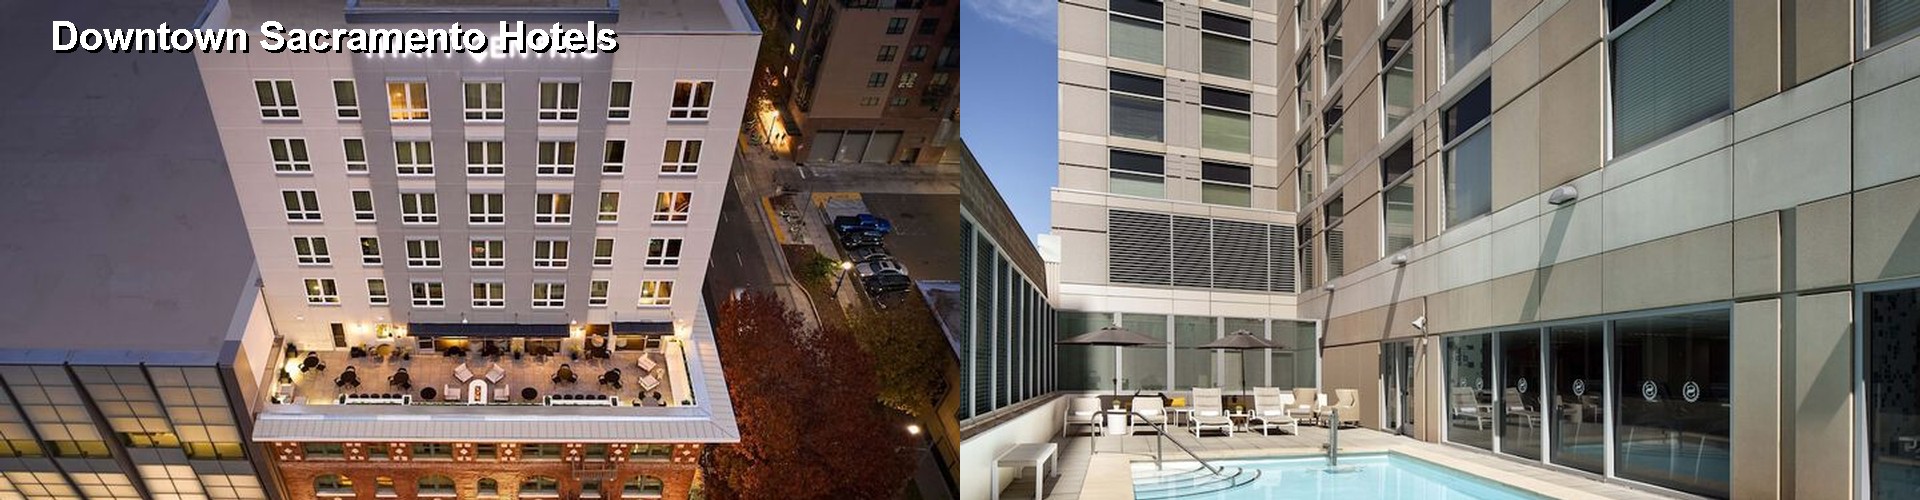 5 Best Hotels near Downtown Sacramento